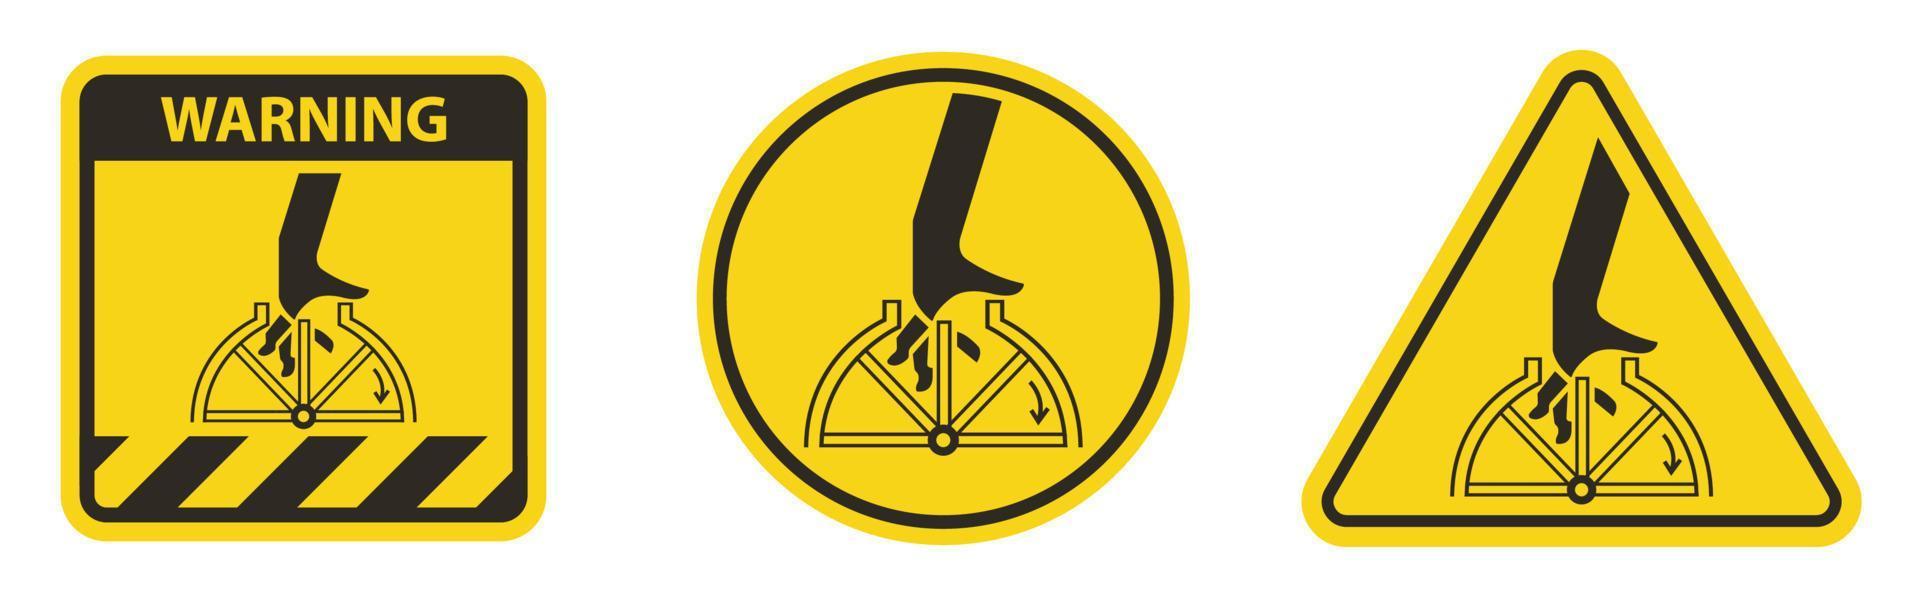 sinal de símbolo giratório de emaranhamento de mão isolado no fundo branco, ilustração vetorial eps.10 vetor